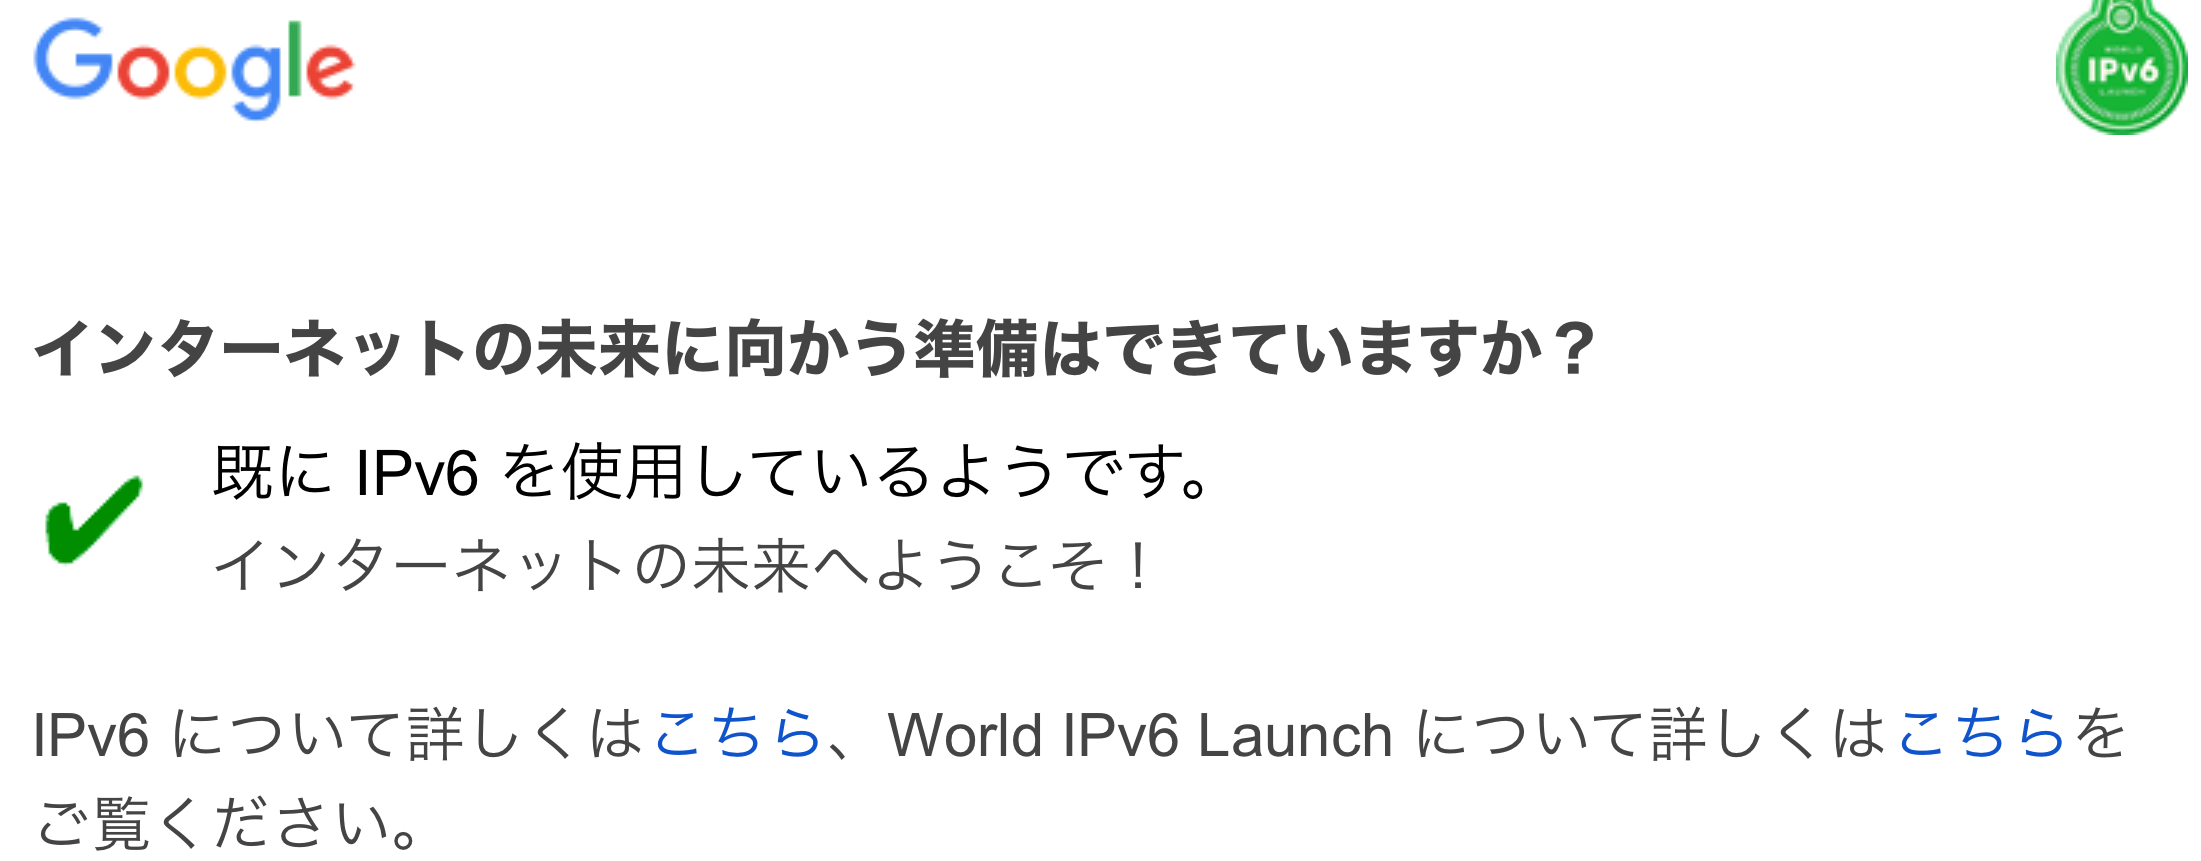 IPv6 対応確認